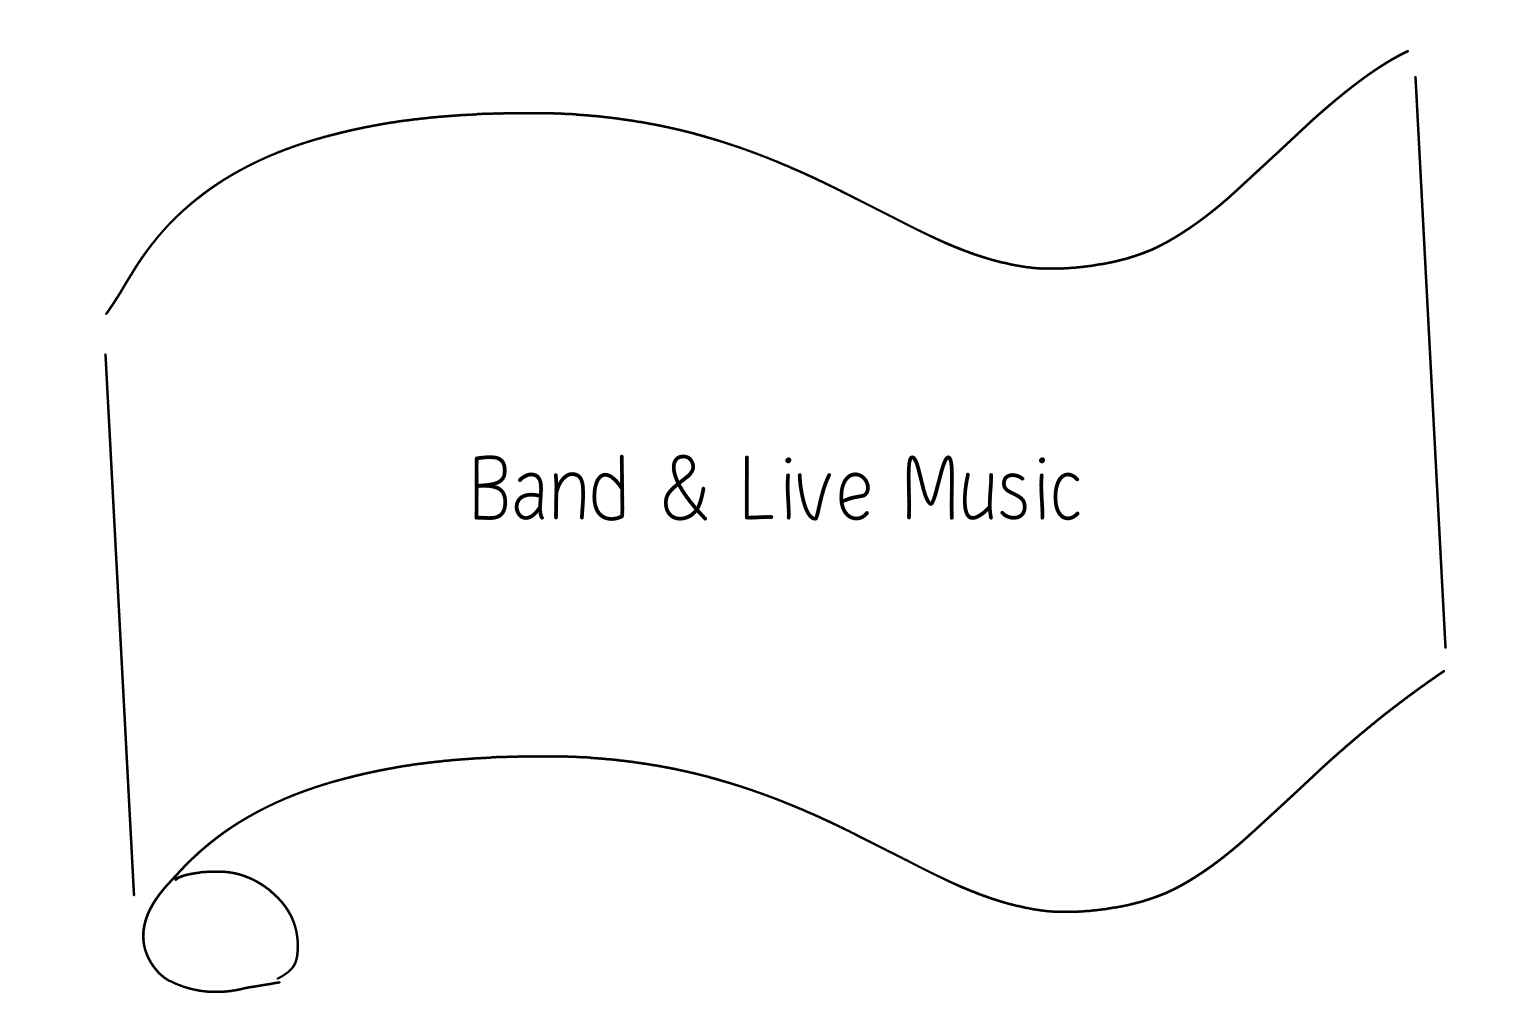 Illustration of Wedding Bands & Live Music